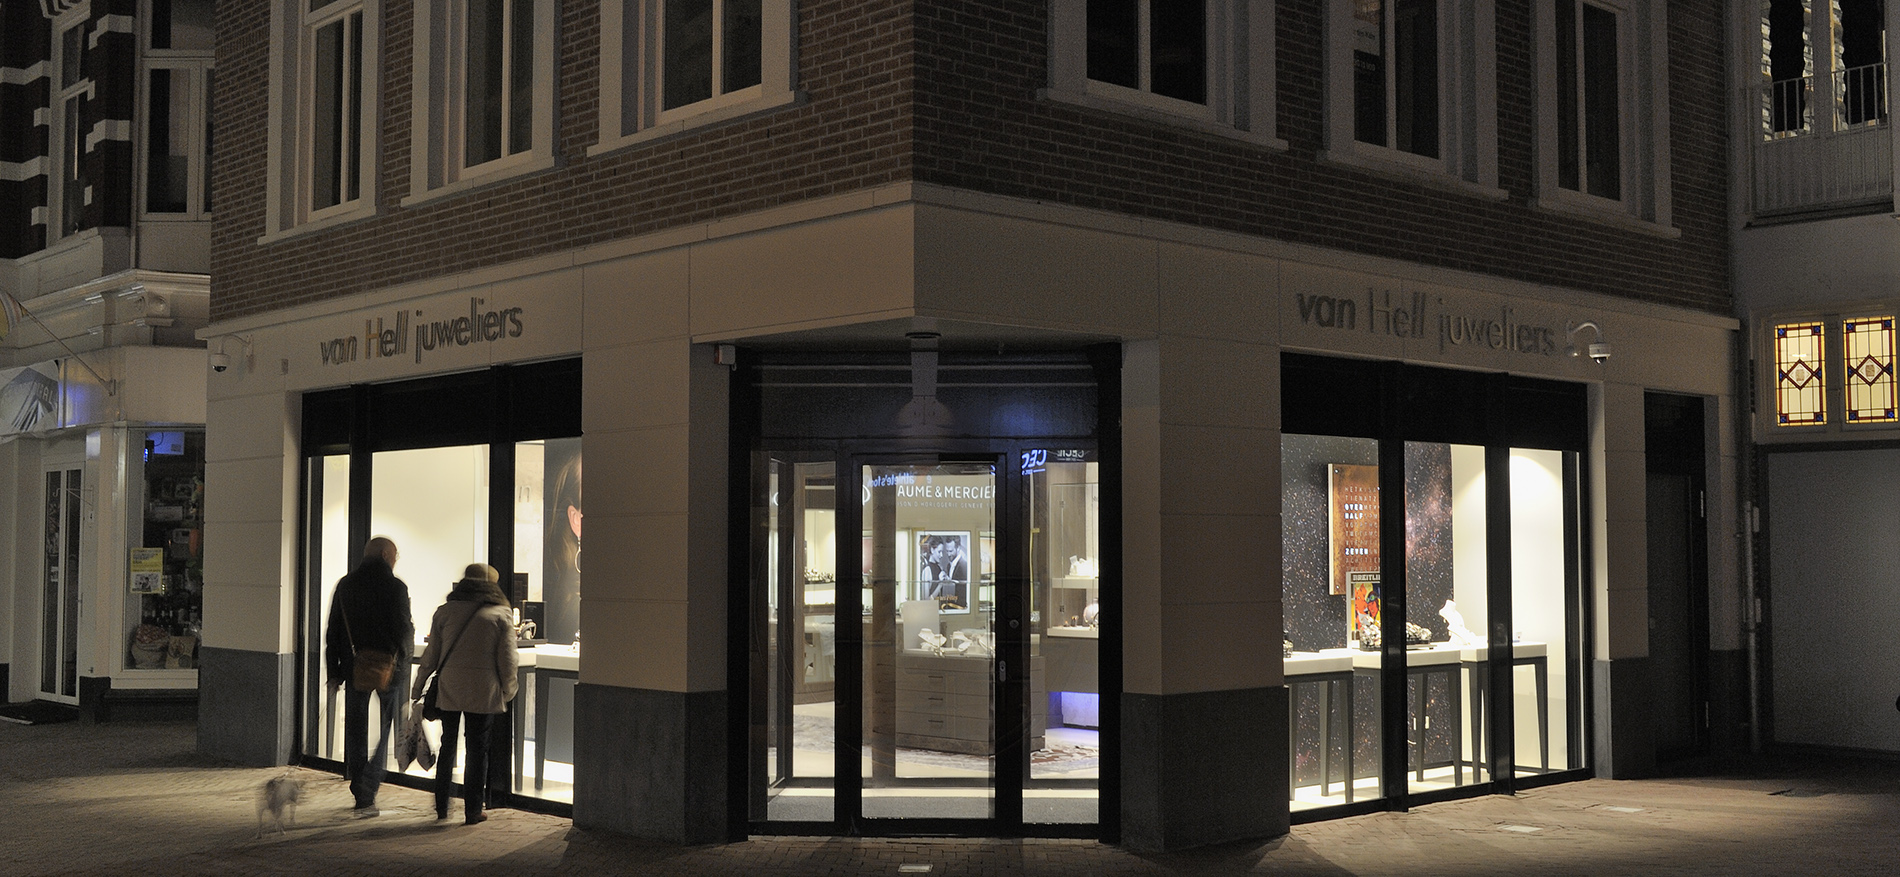 van Hell Juweliers, Apeldoorn (NL): Retail Design und Einrichtung schmuckgeschäft - 